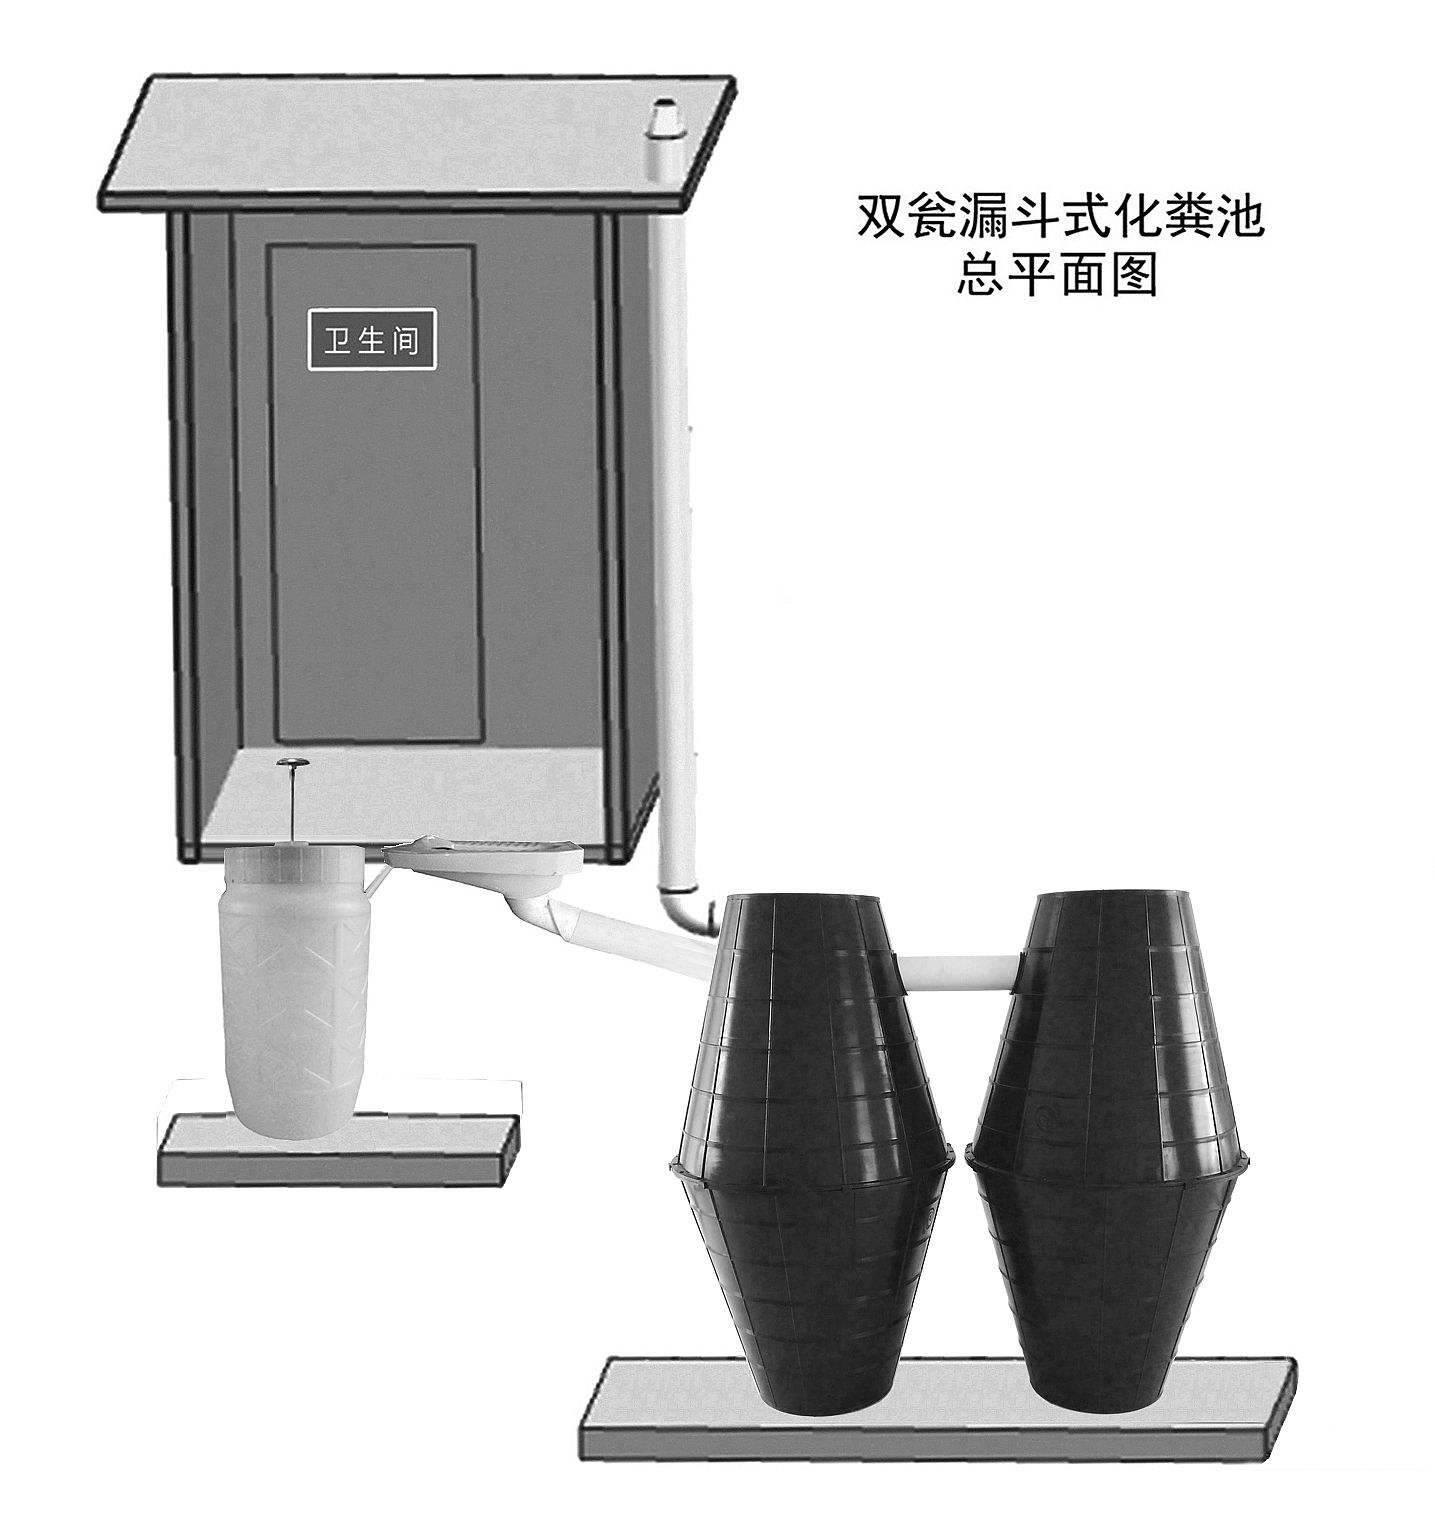 双瓮式厕所安装示意图图片